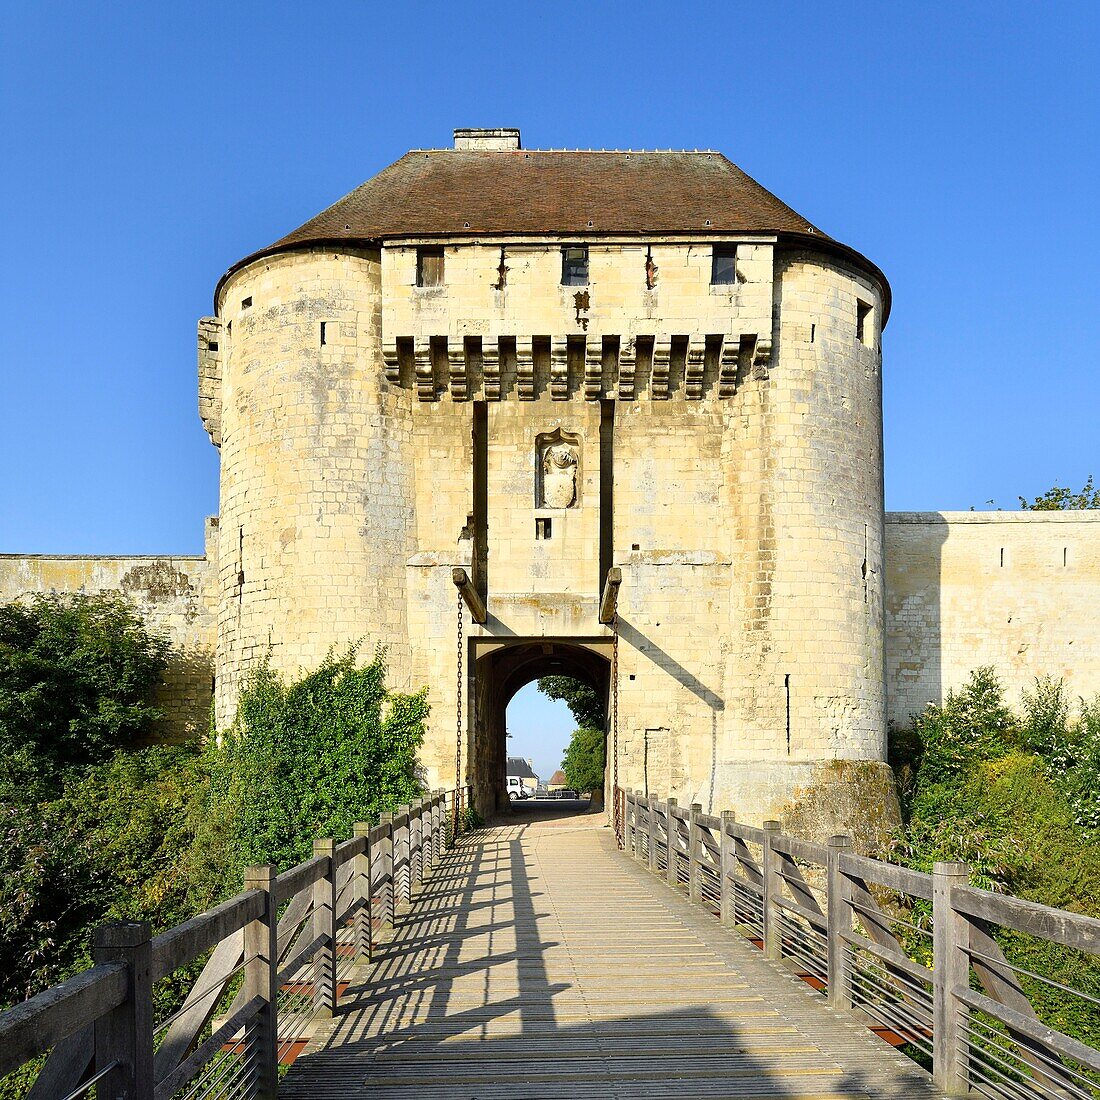 Frankreich,Calvados,Caen,das Schloss von Wilhelm dem Eroberer,Herzogspalast,die "Porte des Champs"